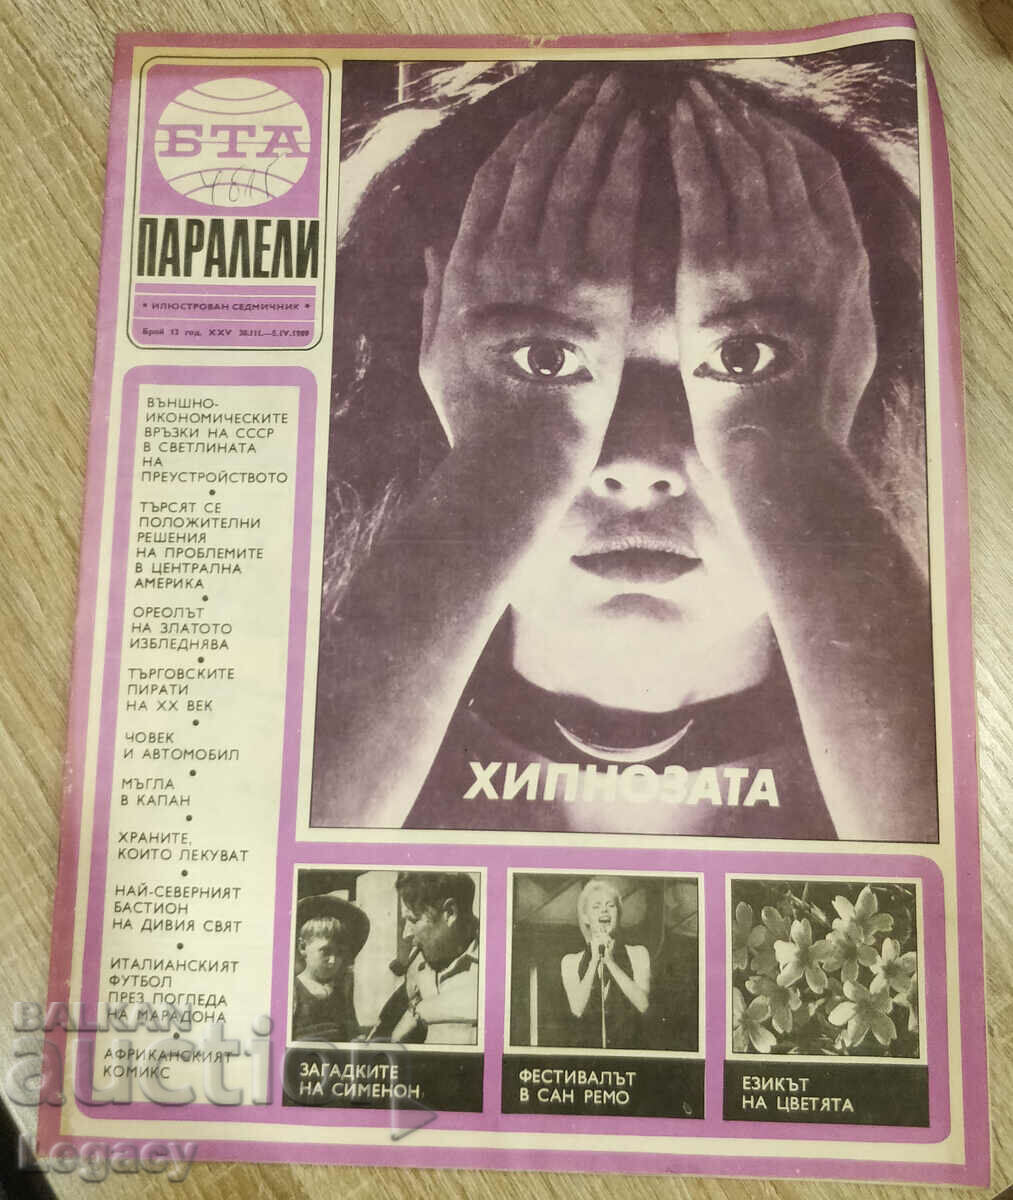 1989 BTA Parallels magazine, issue 13